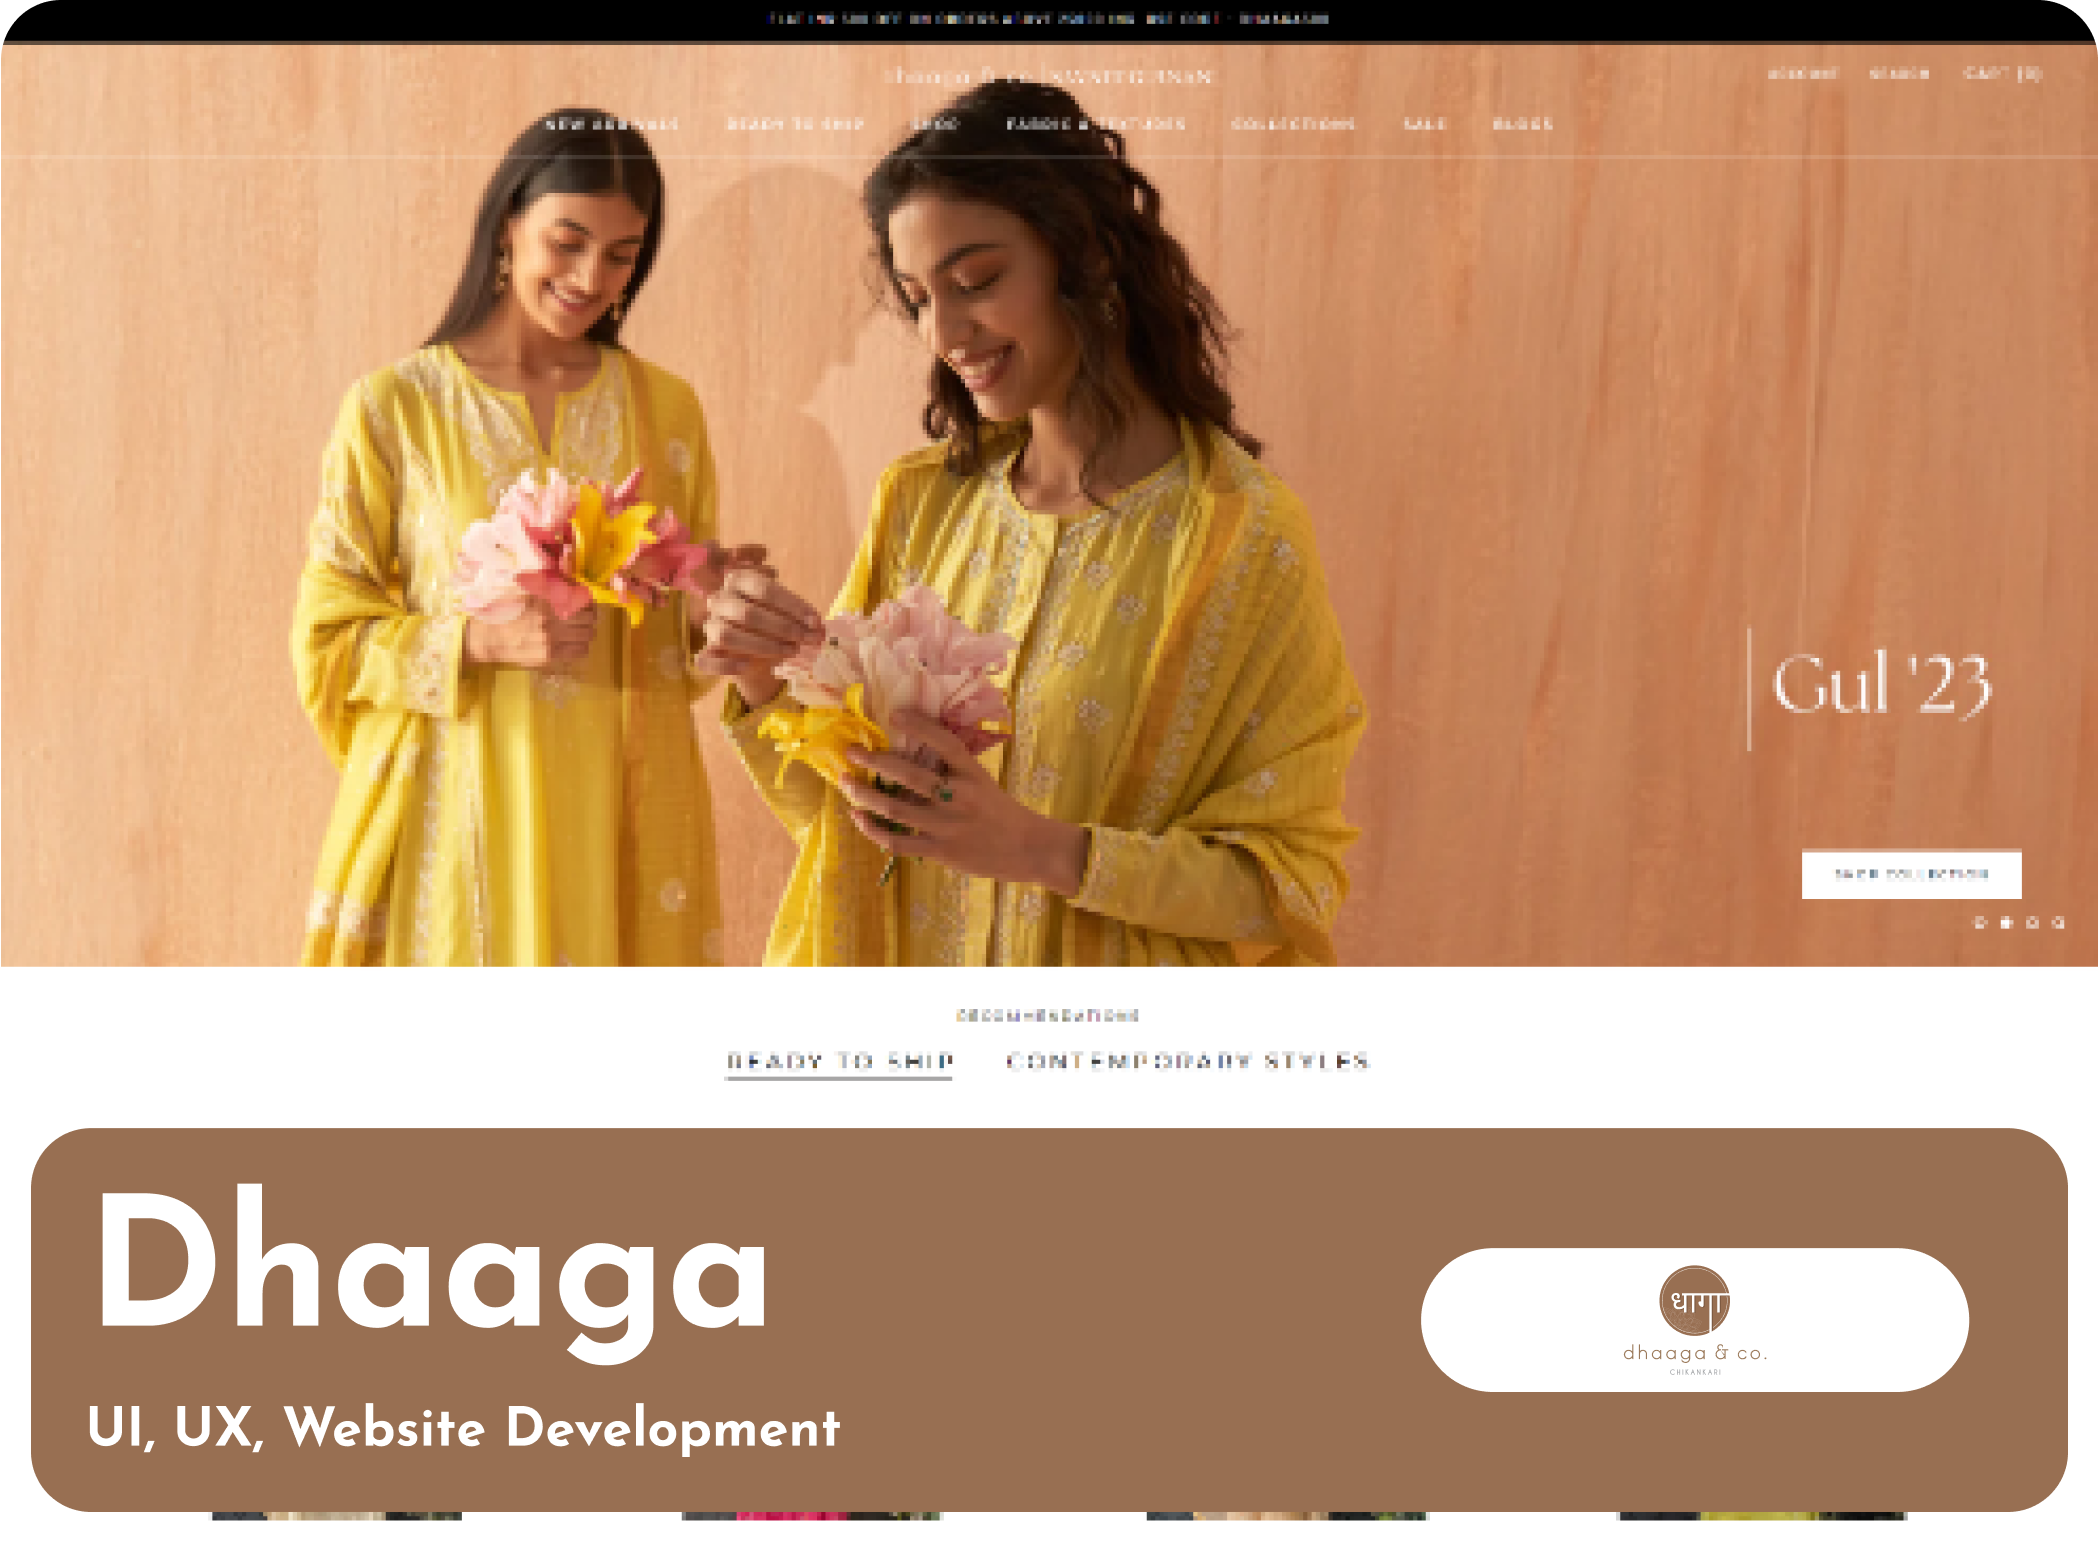 Dhaaga website is created by Alfyi